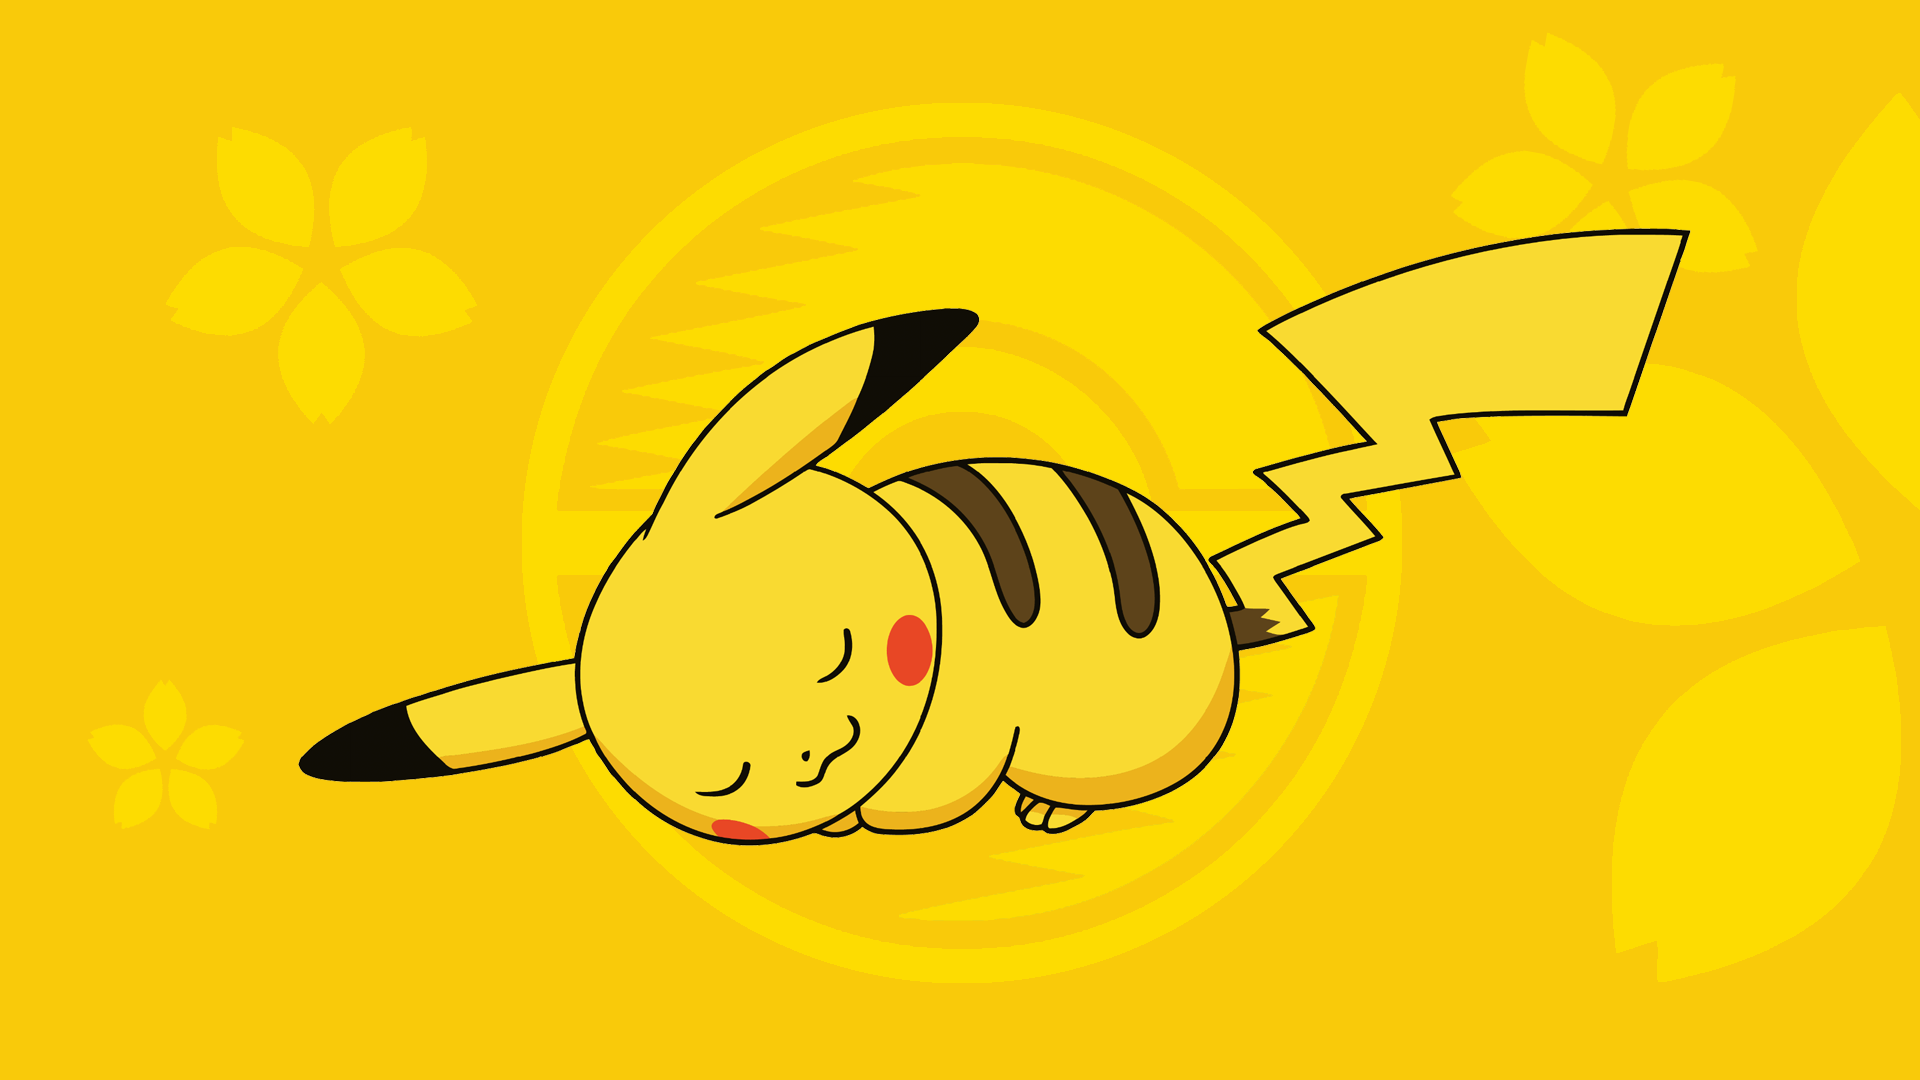 Tải hình nền Pikachu miễn phí: Đừng bỏ lỡ cơ hội tải về những bức hình nền Pikachu miễn phí đầy màu sắc! Sẵn sàng biến màn hình điện thoại của bạn thành một sân chơi vui nhộn với chú chuột điện kinh điển này.